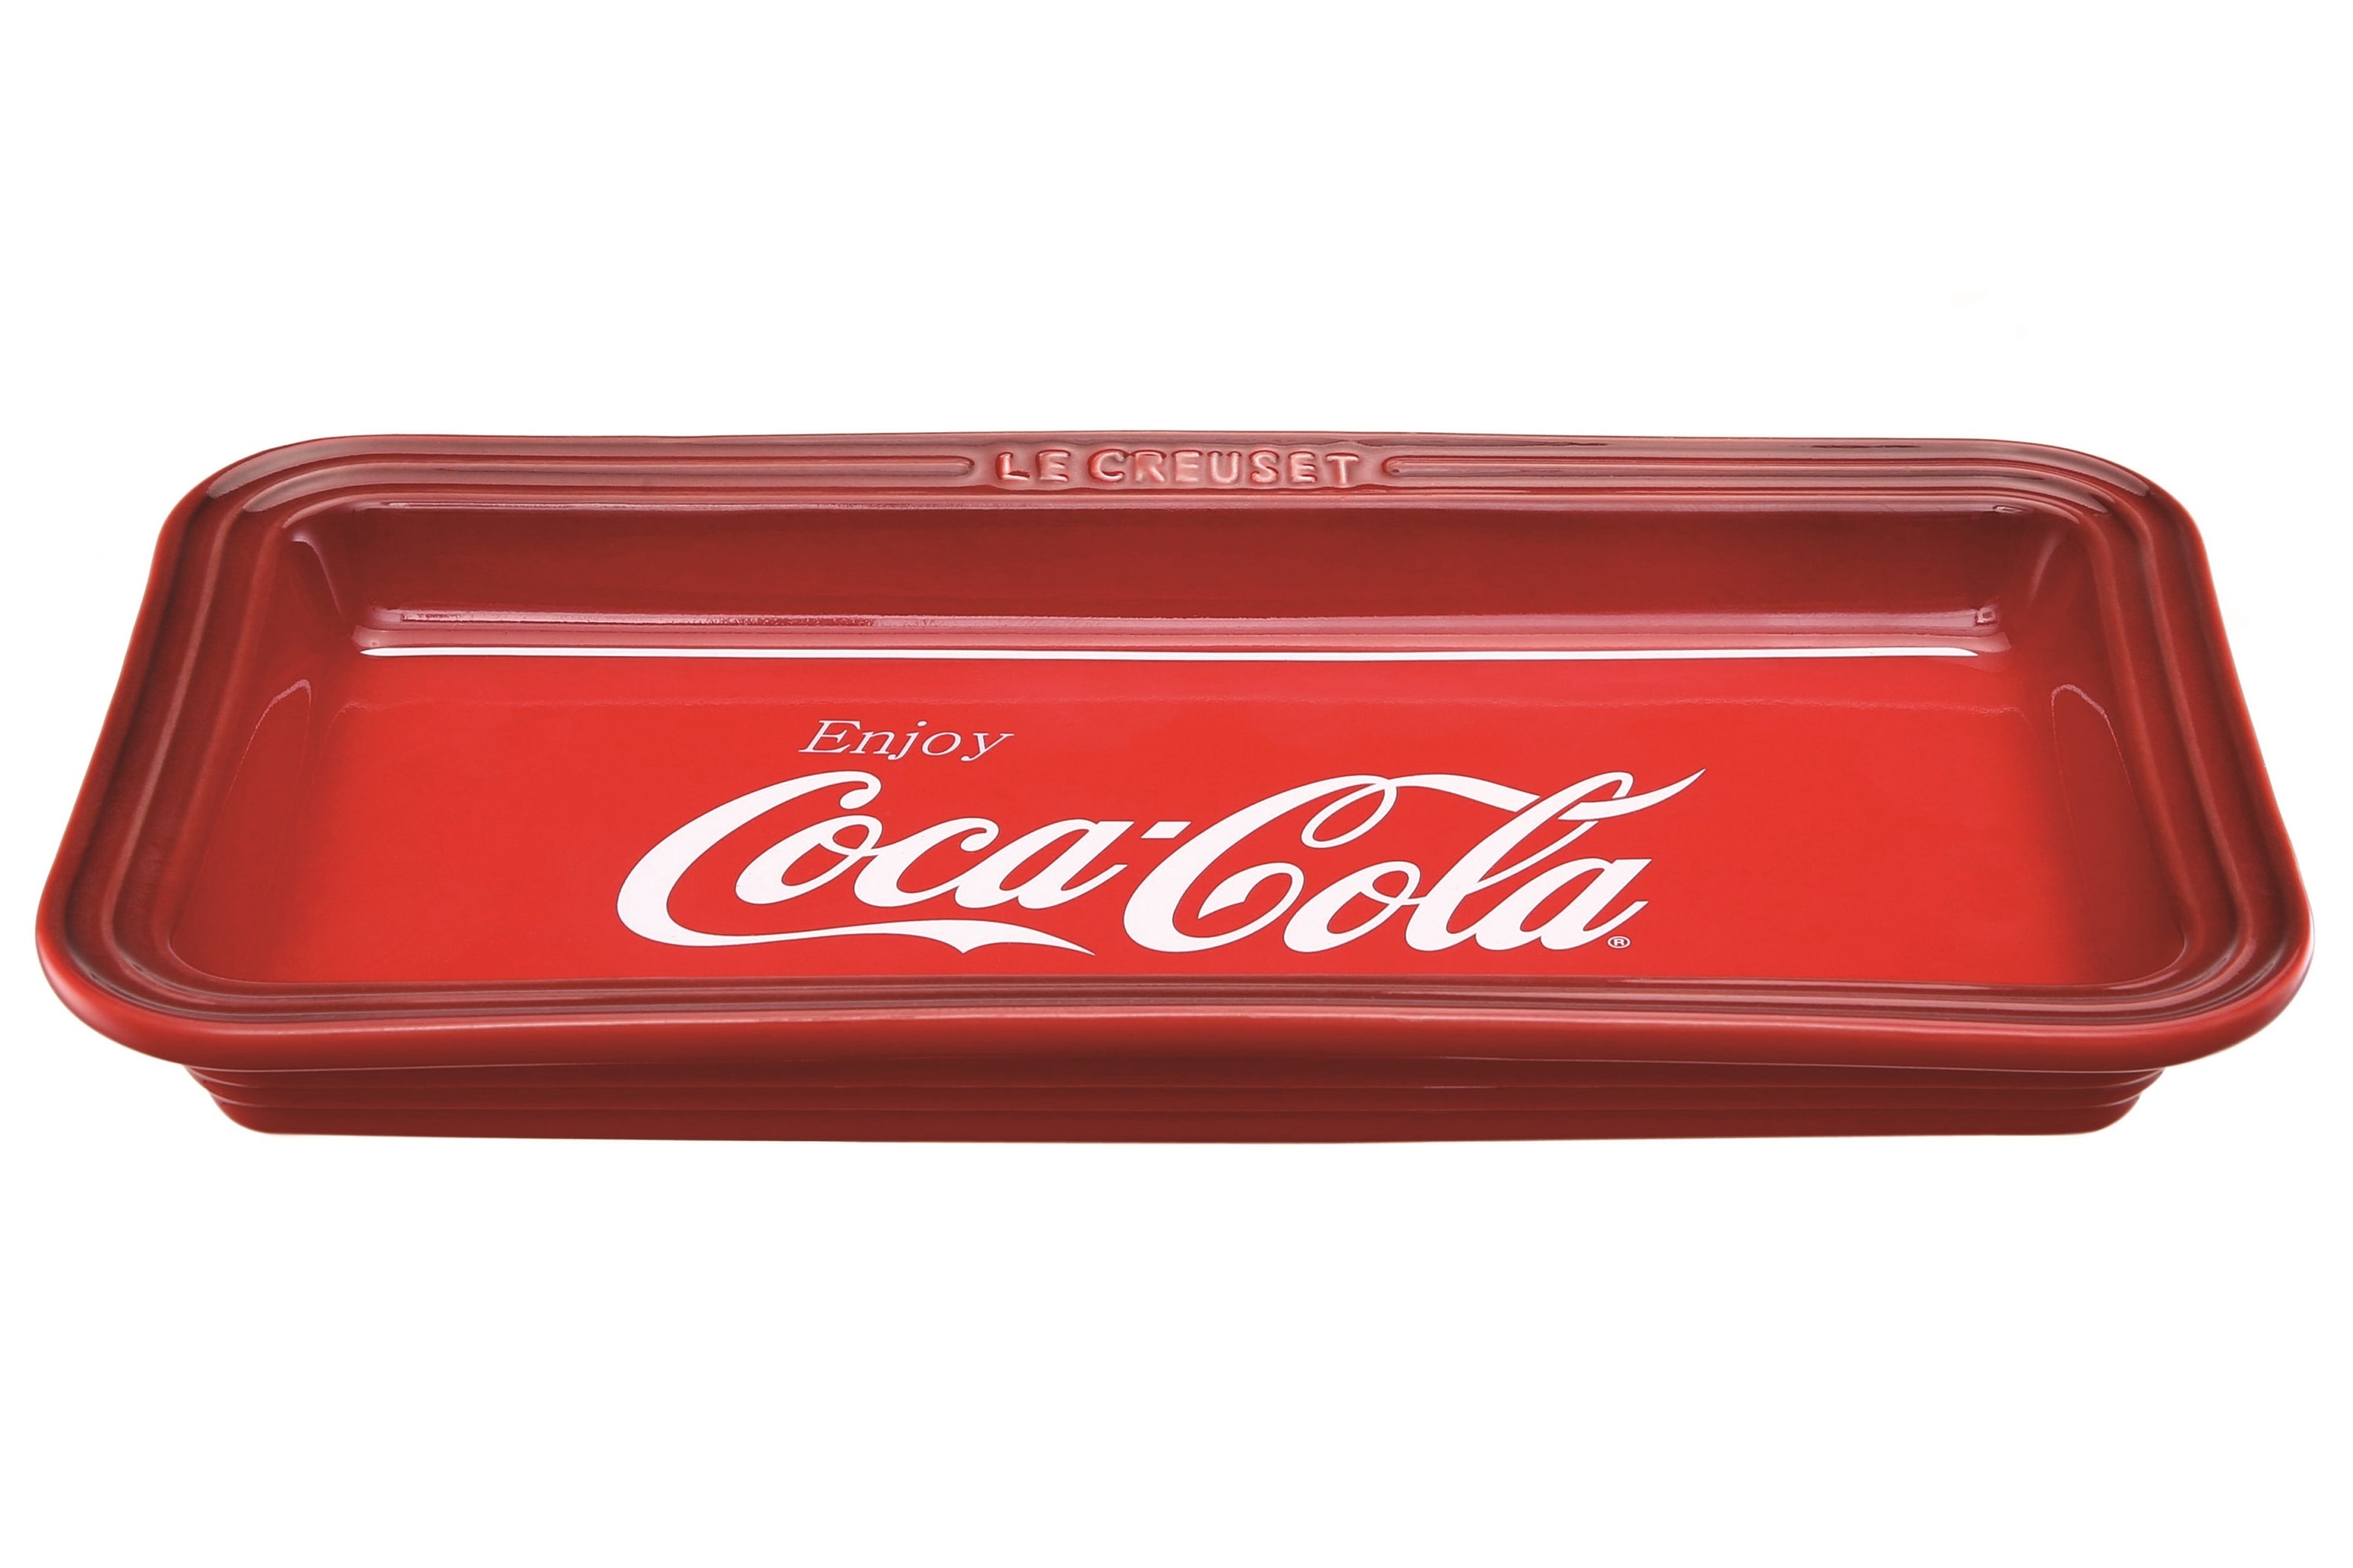 Coca-Cola x Le Creuset 別注限量版套裝將登陸香港